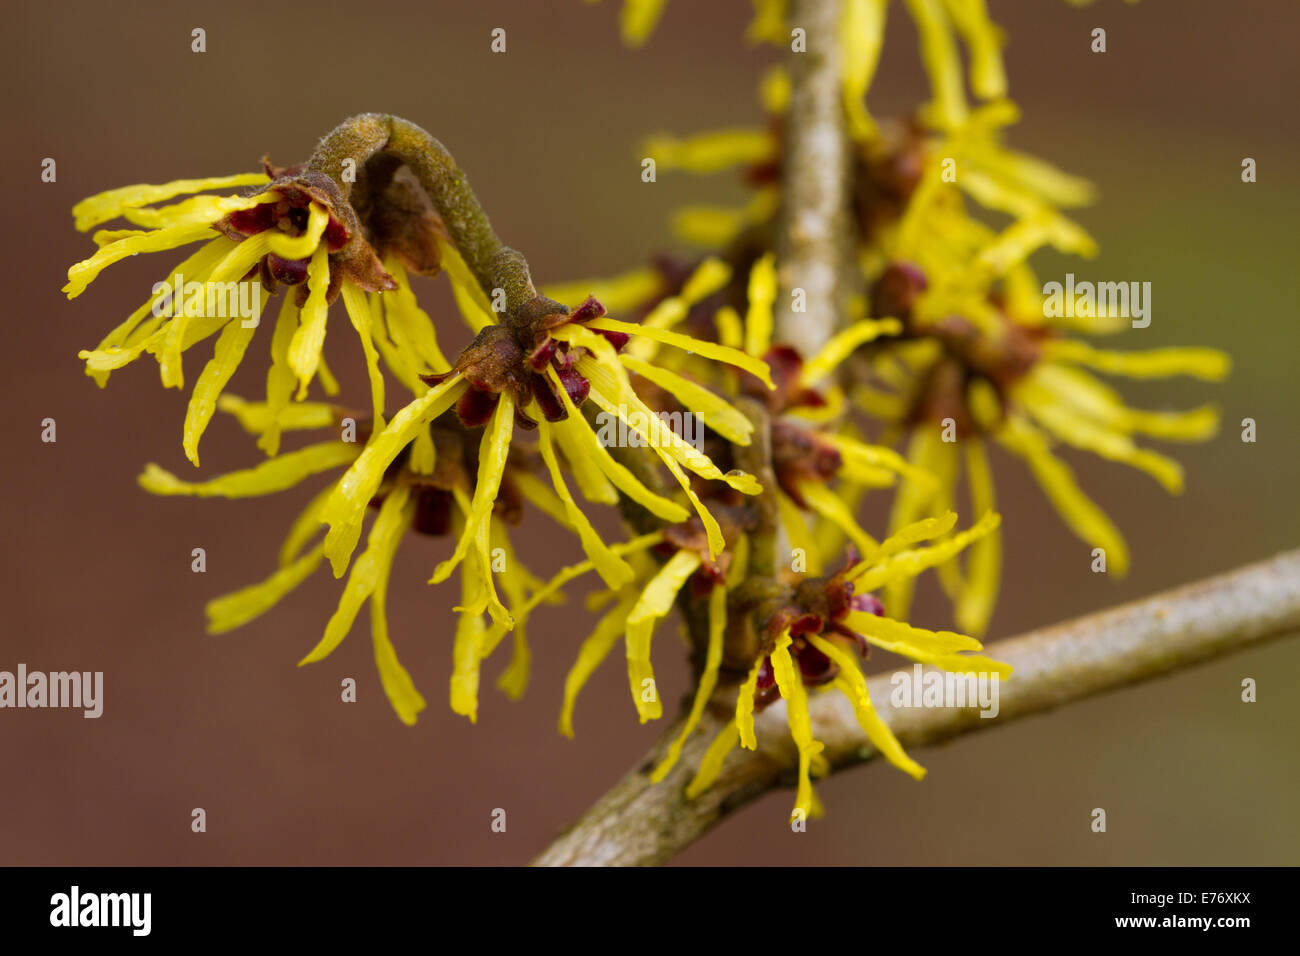 Avellana de bruja (Hamamelis sp.) la floración. Arbusto de jardín, Powys, Gales. Febrero. Foto de stock